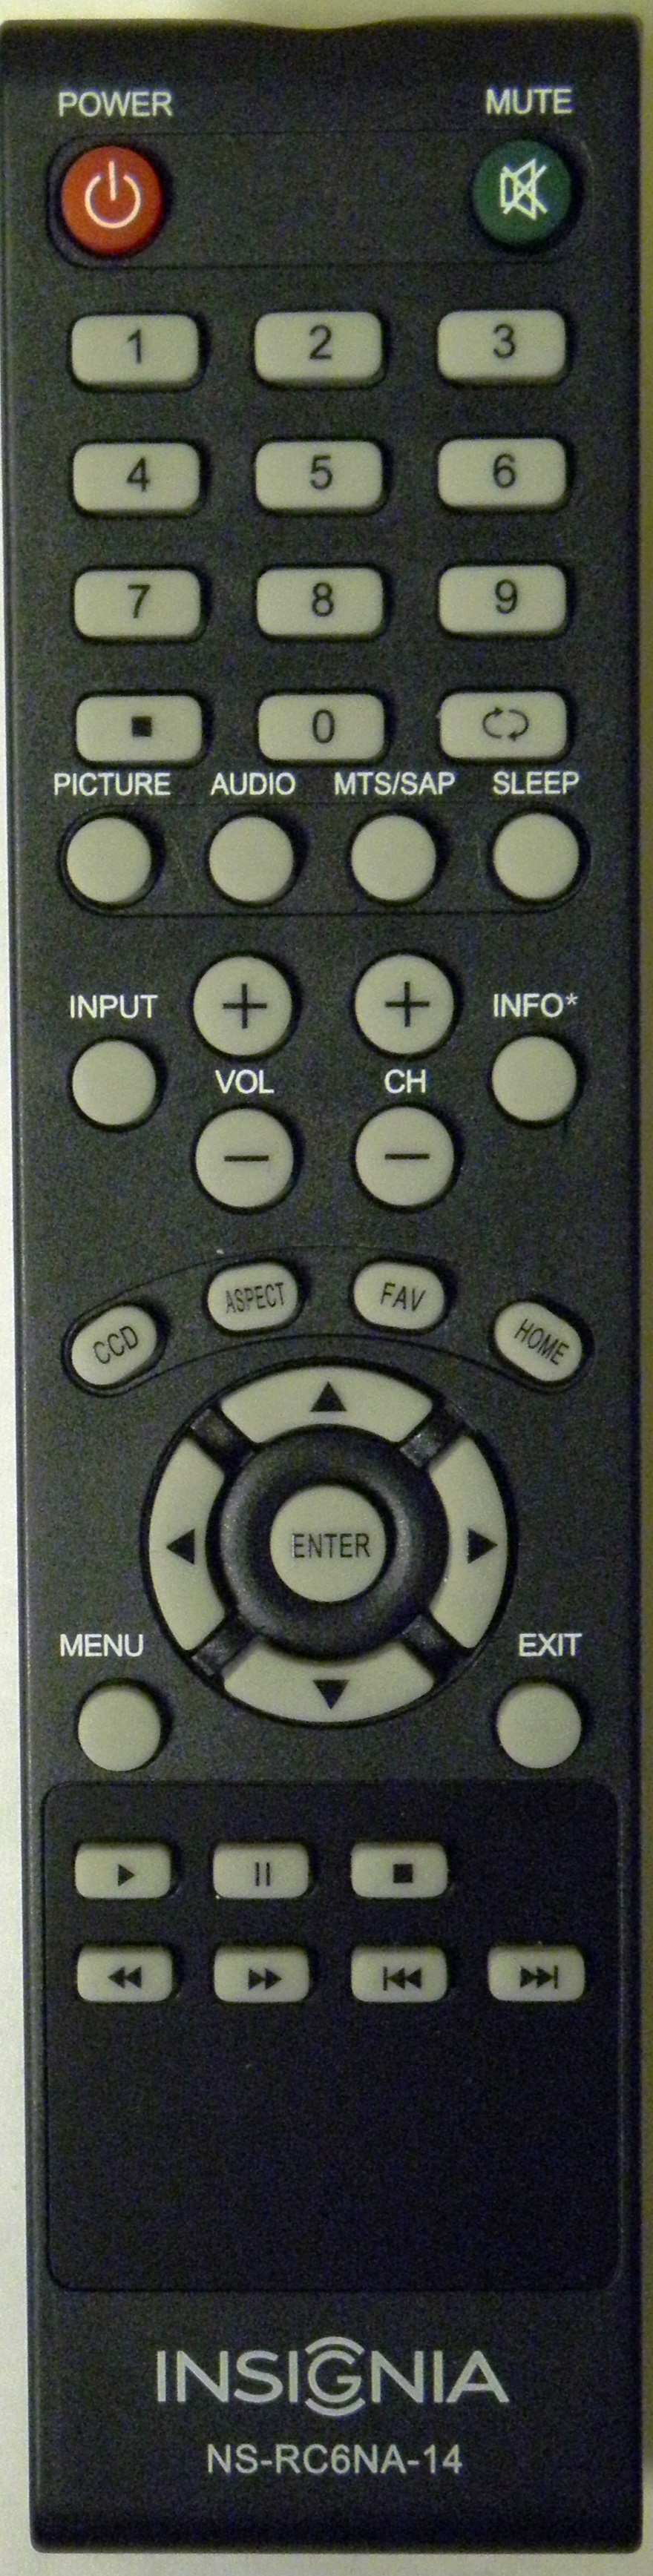 INSIGNIA NS-RC6NA-14 Remote Control